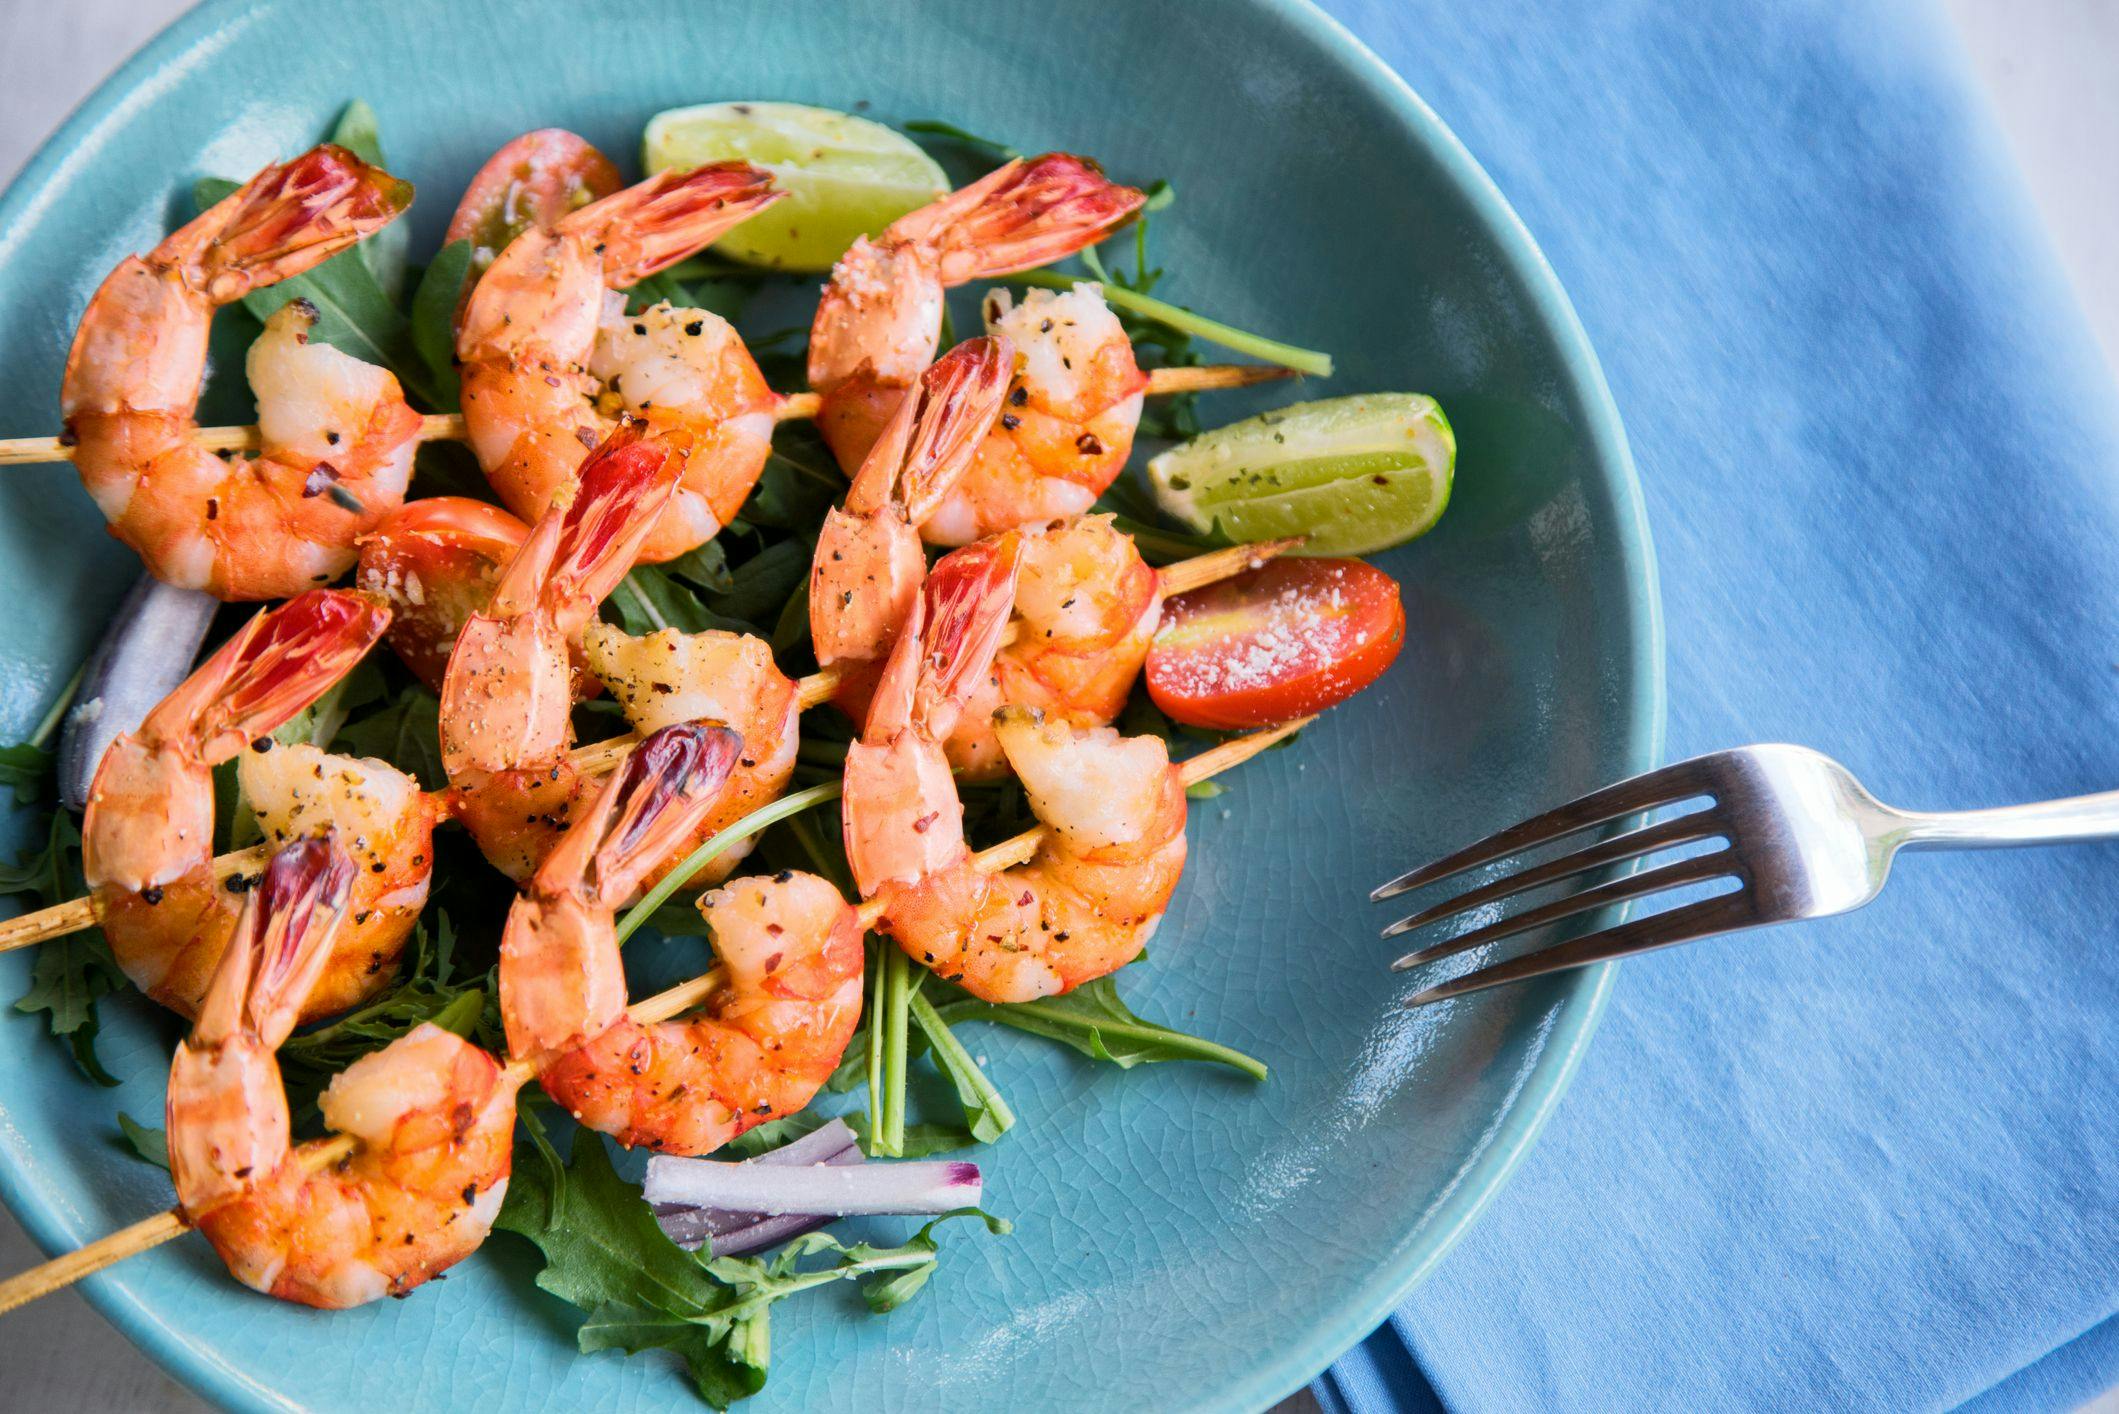 Shrimp Has An Excellent Nutritional Profile